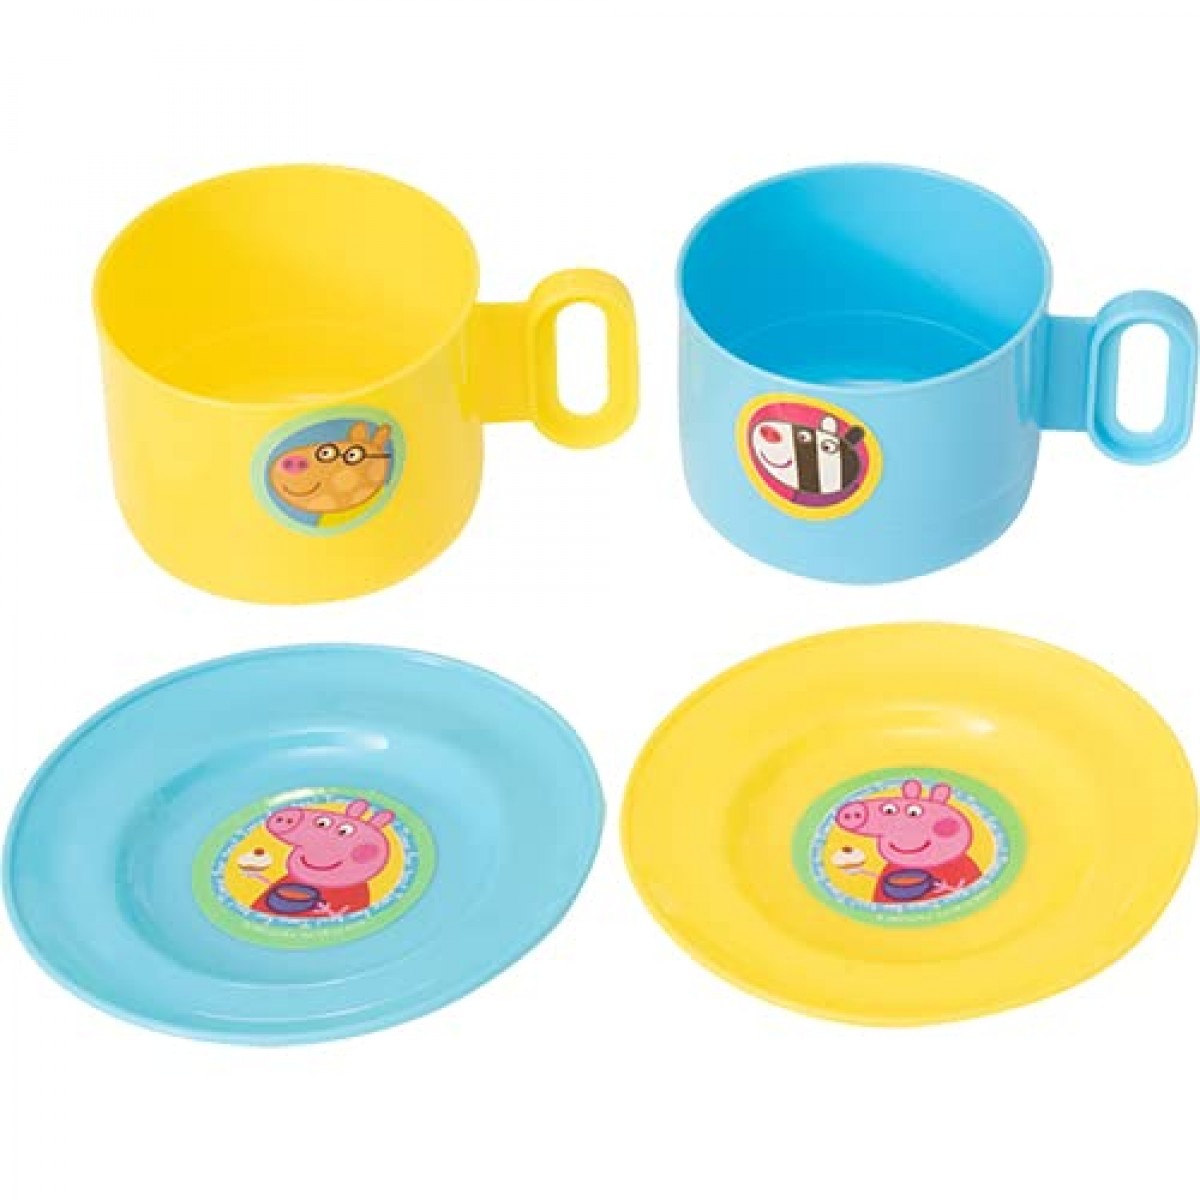 Peppa Pig Tea Set Kitchen Sets & Appliances for Kids age 3Y+ 